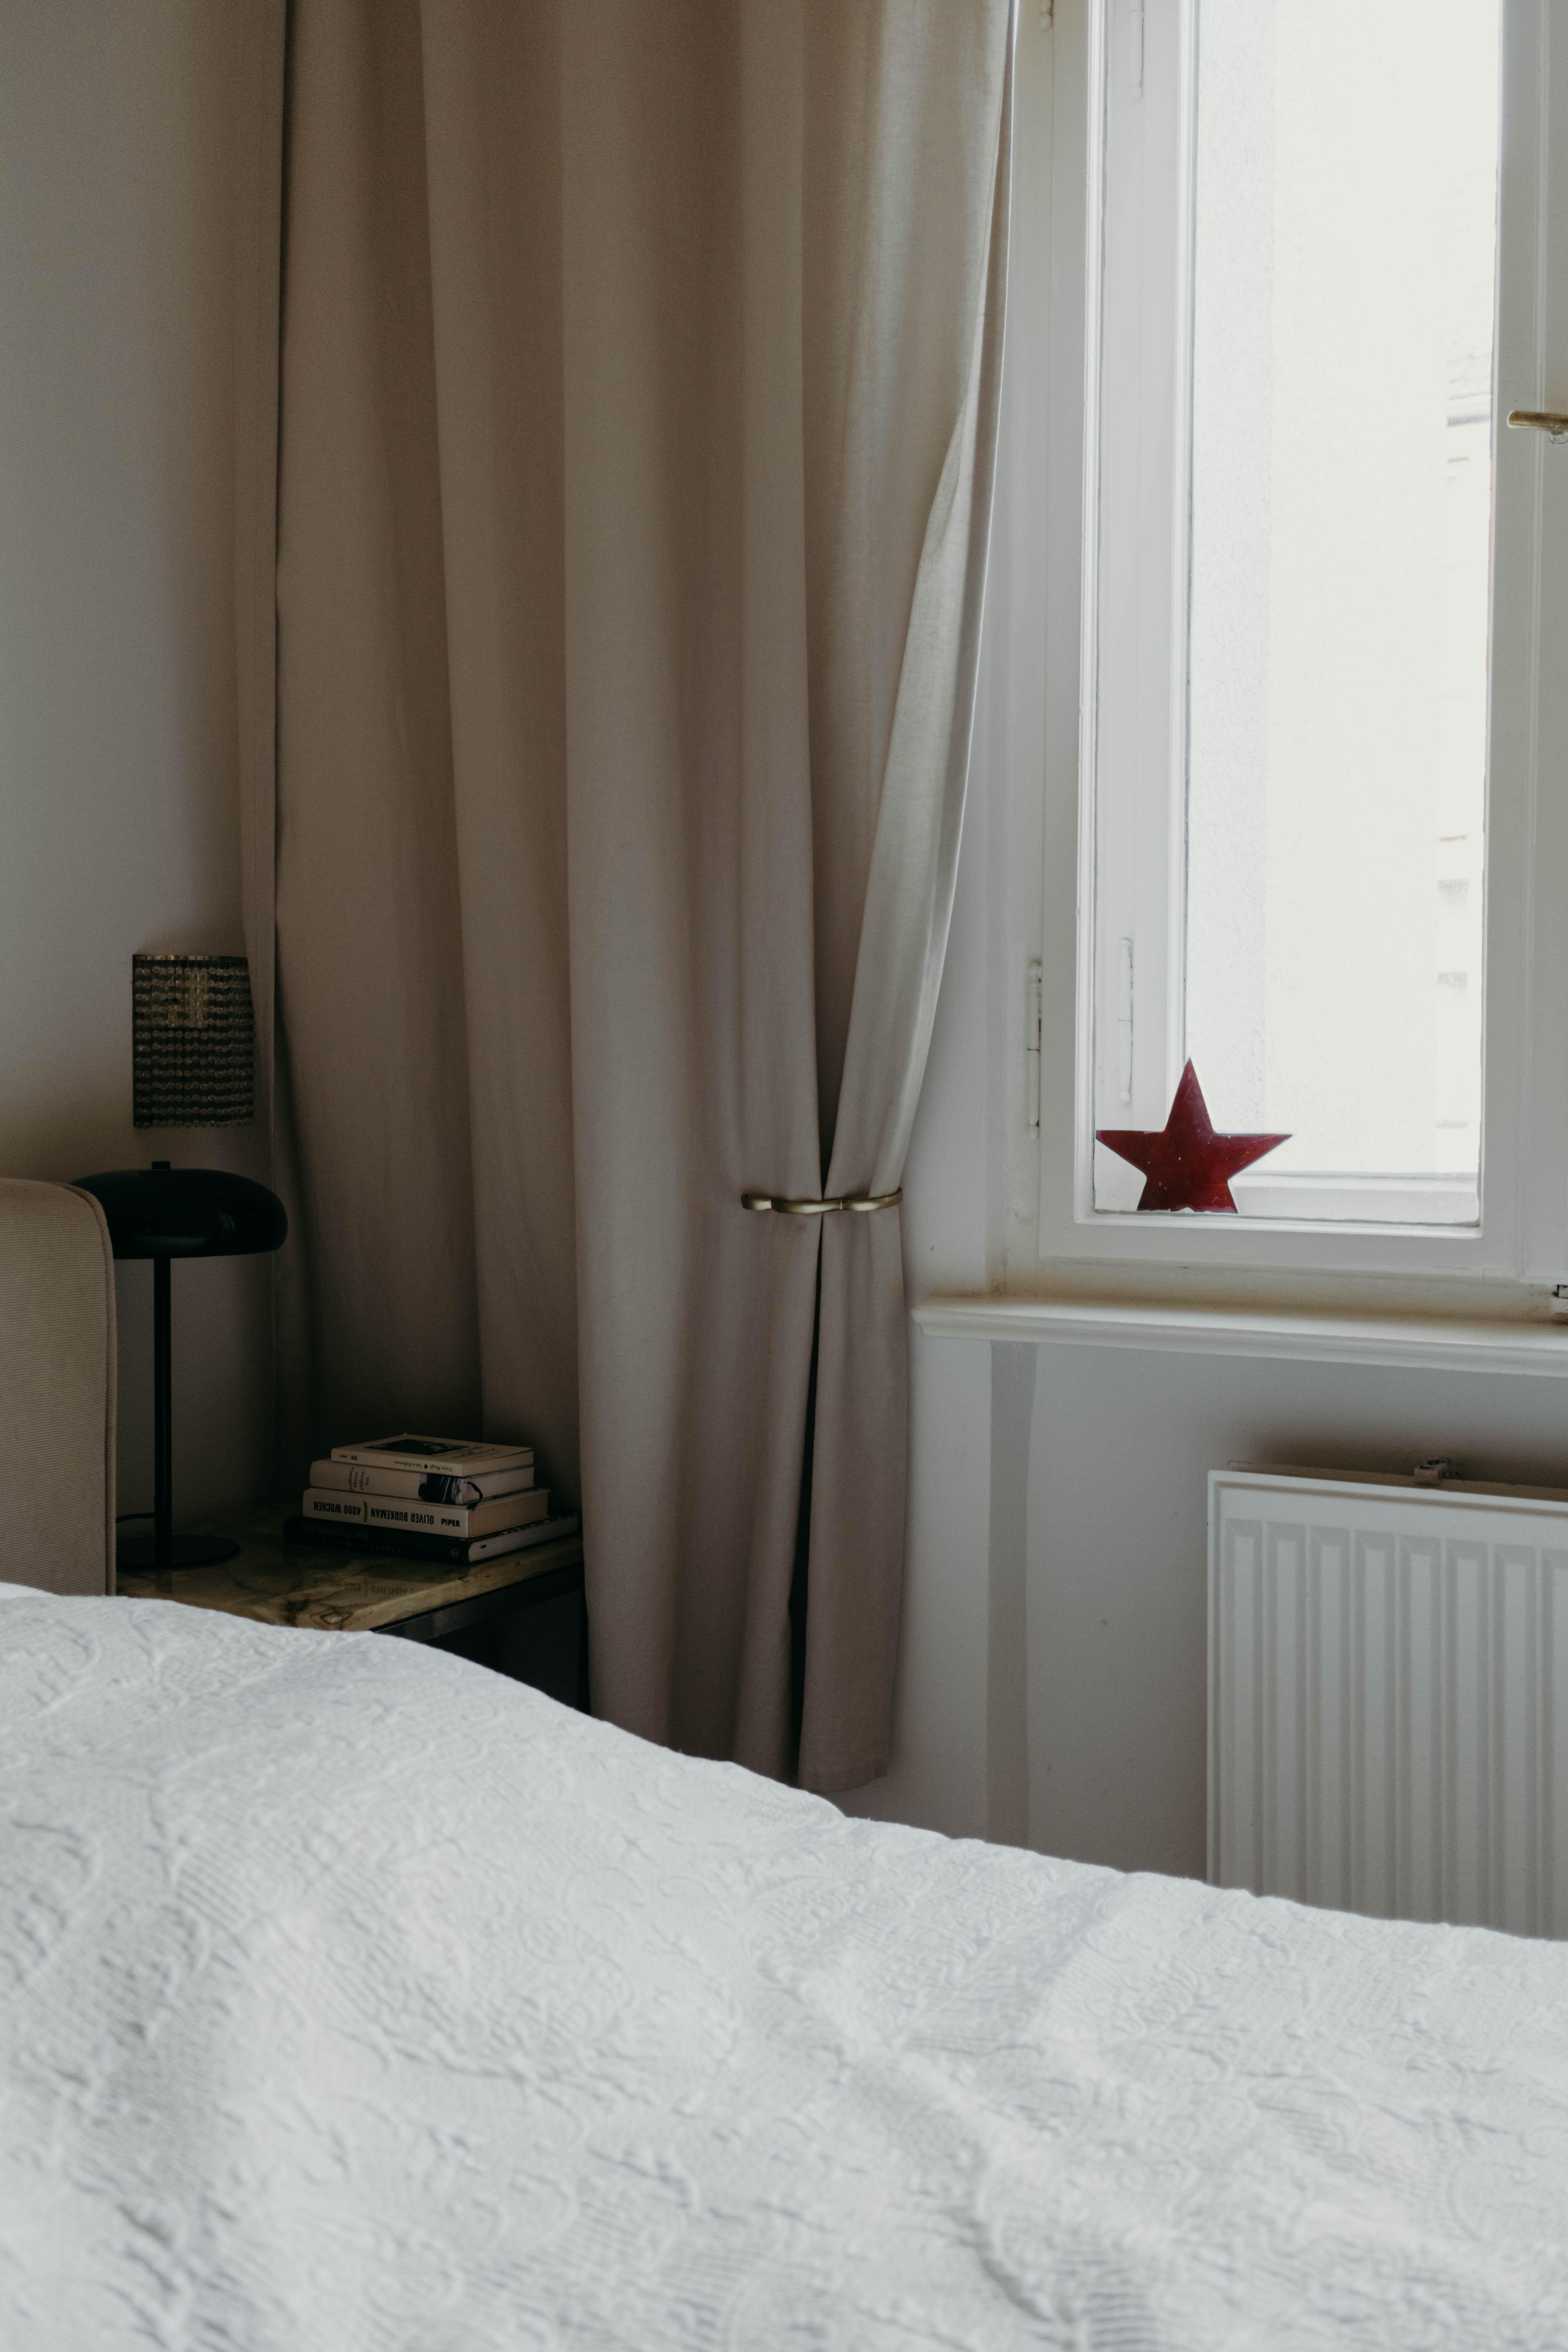 Schlafzimmer #winterdeko #minimalistic #stern #weihnachtsdeko #schlafzimmer